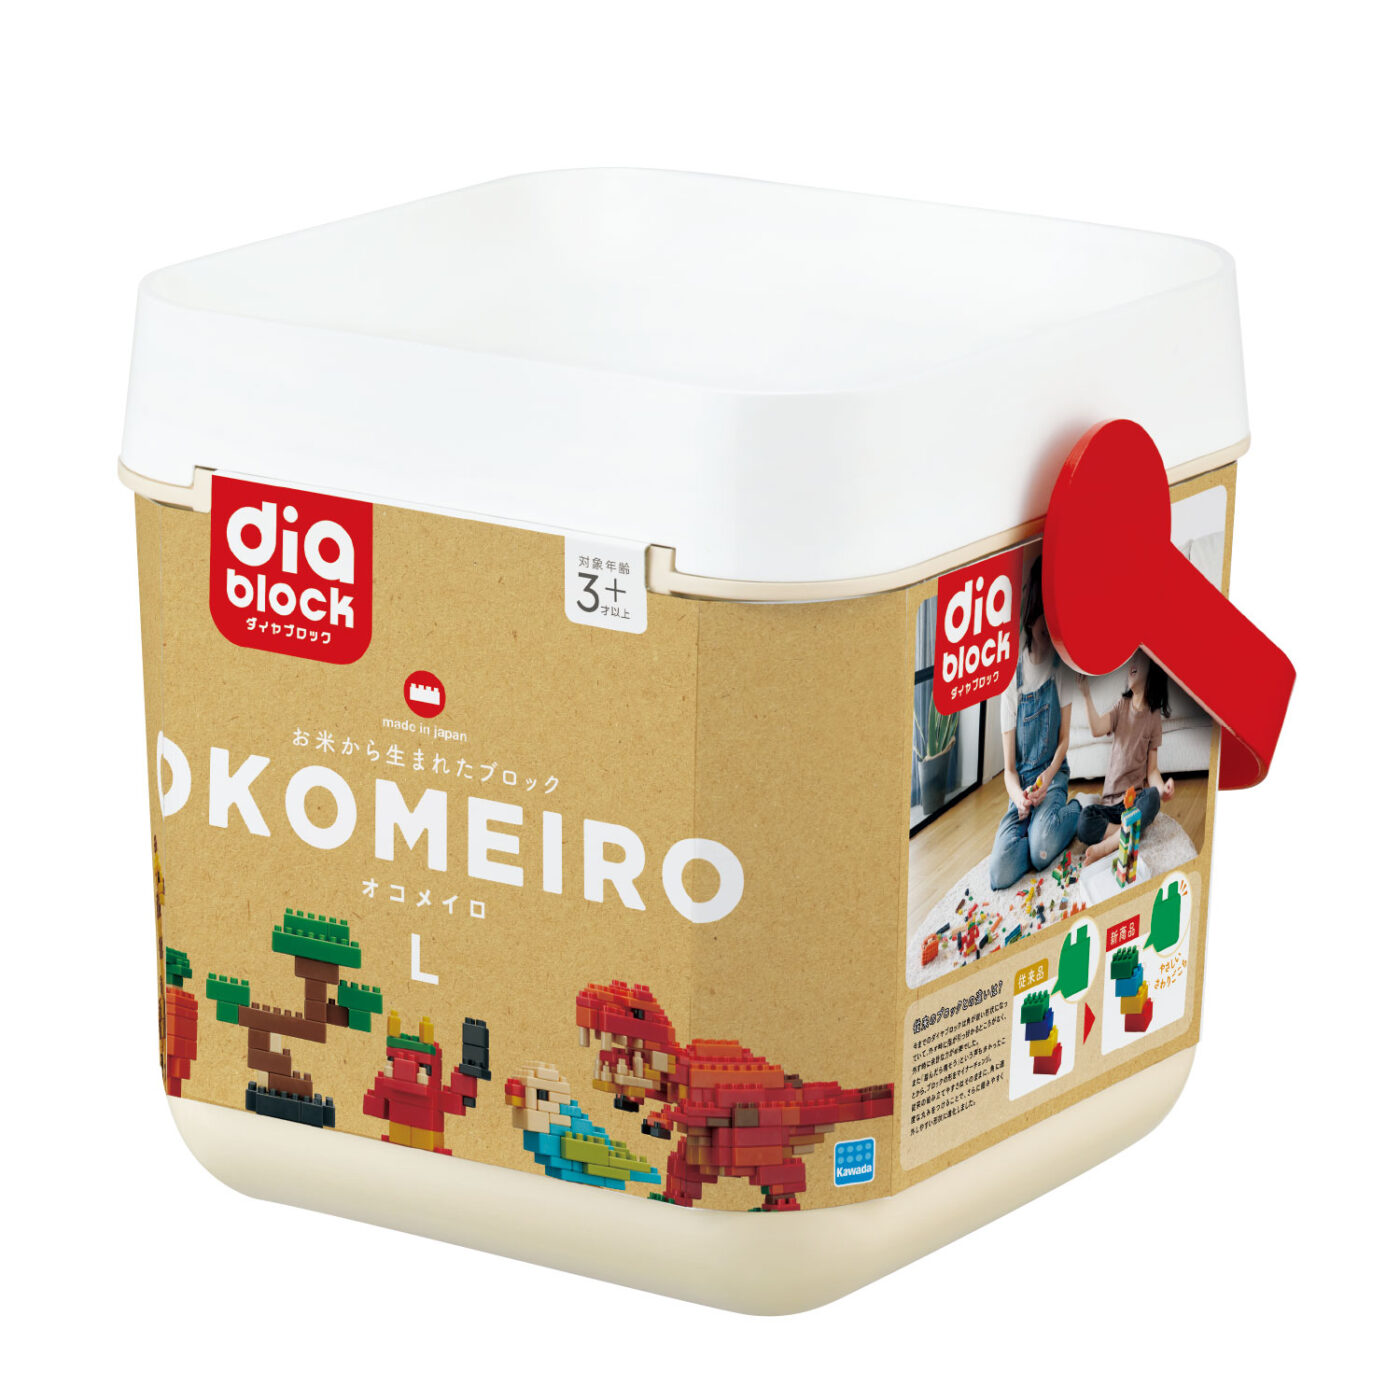 OKOMEIRO Lの商品画像1